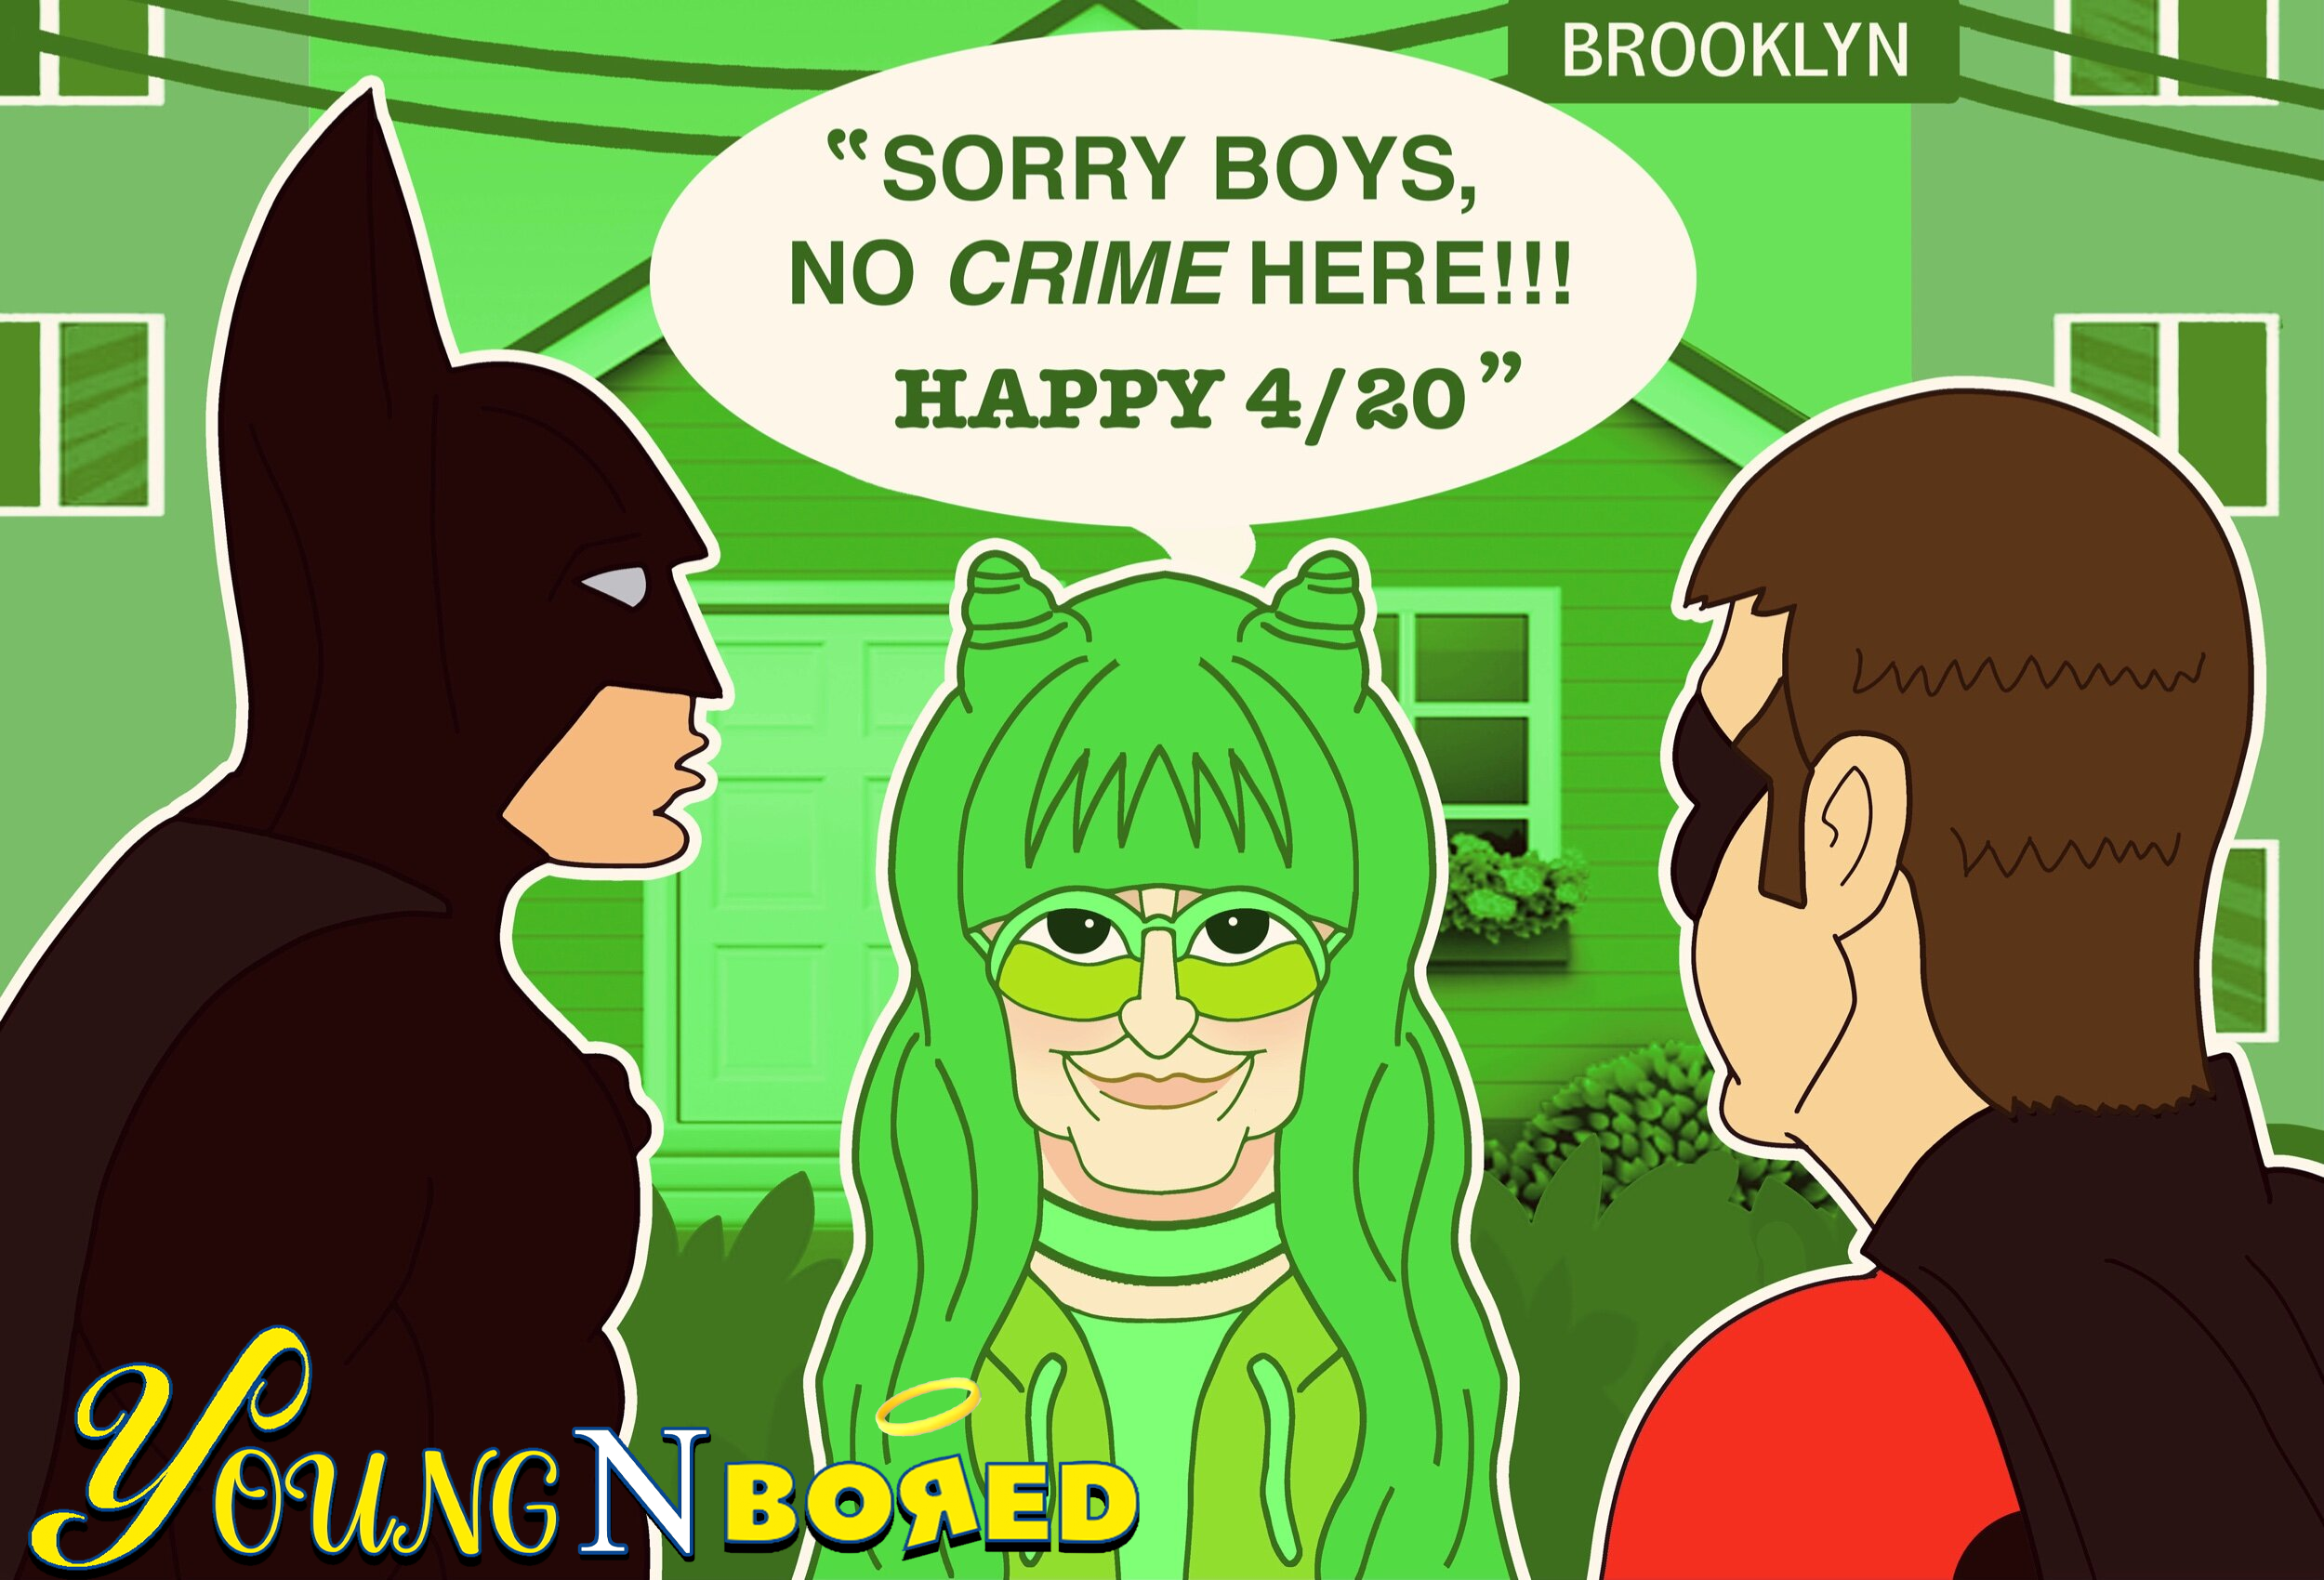 Green Lady of Brooklyn